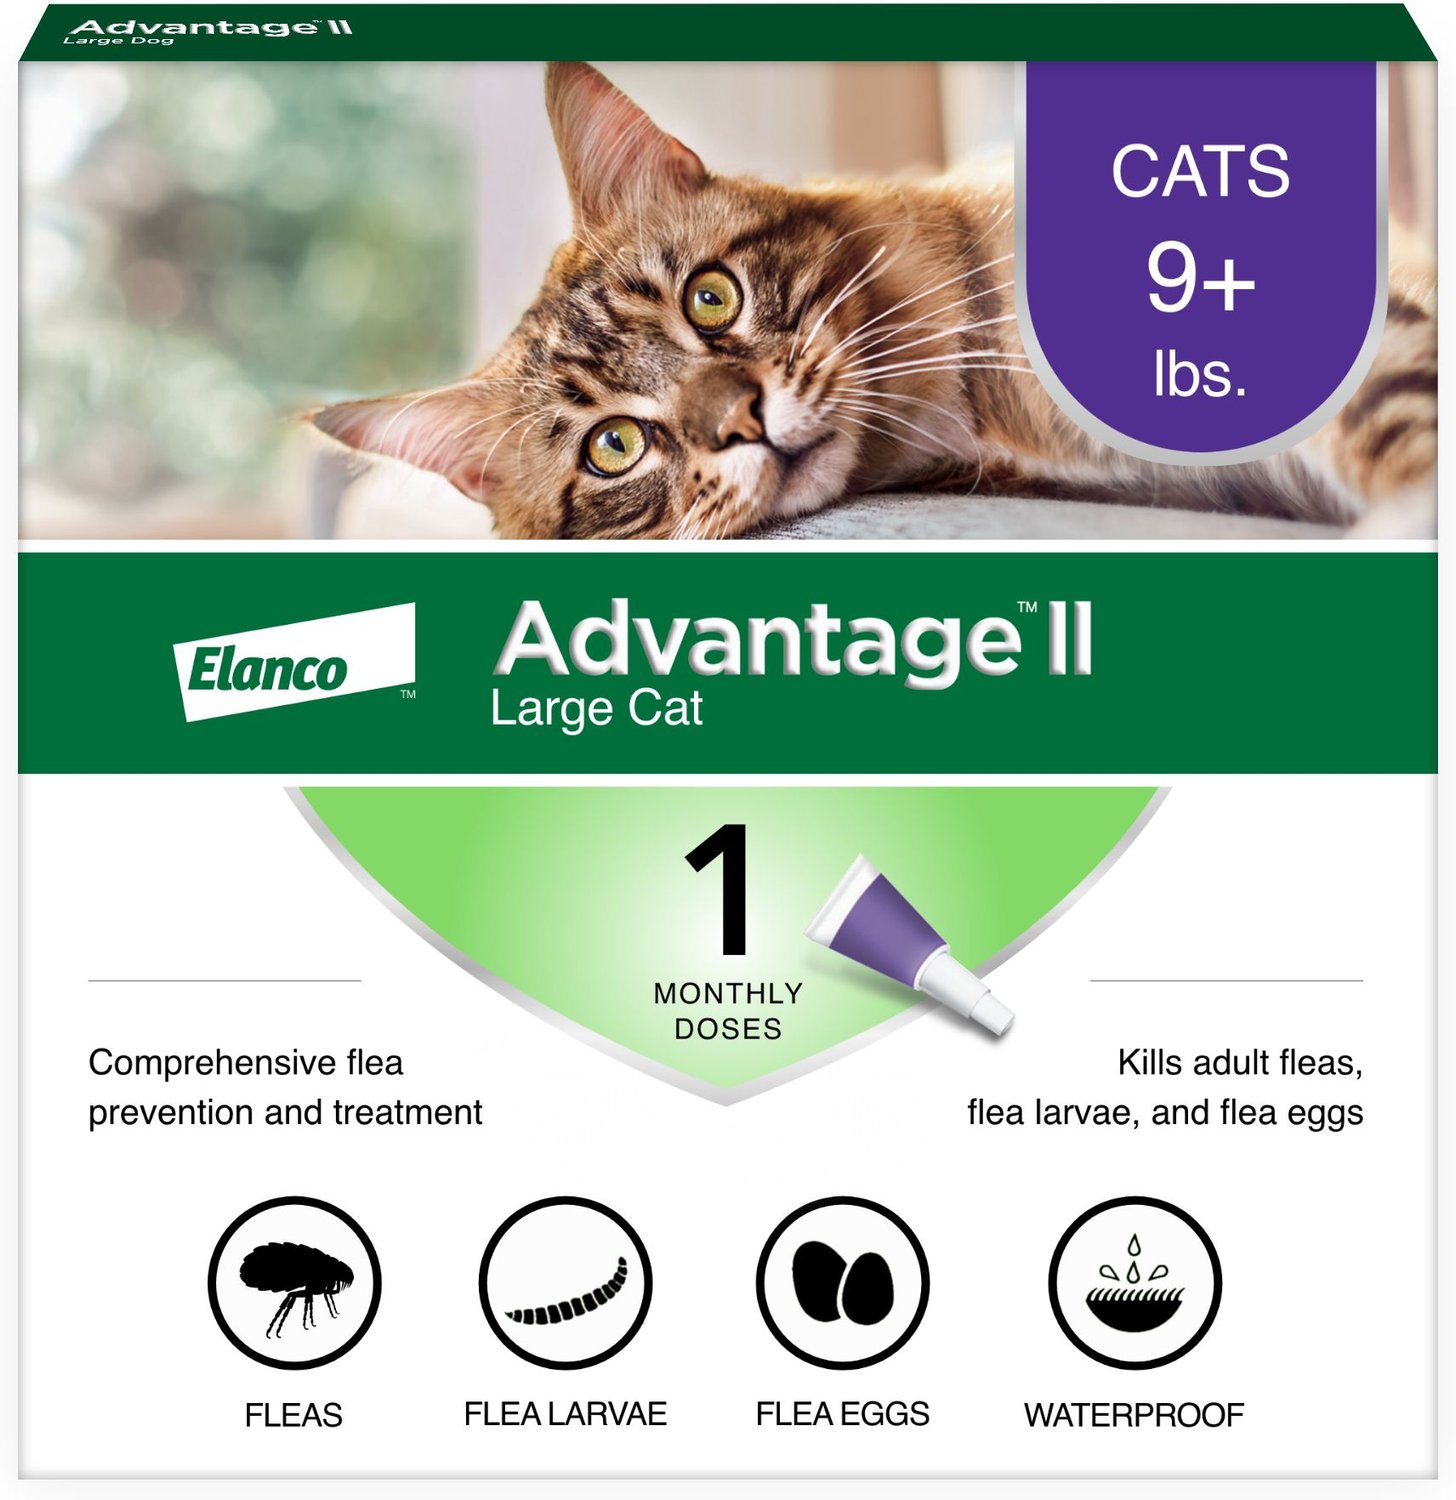 Advantage II Flea Spot Treatment for Cats, over 9 lbs